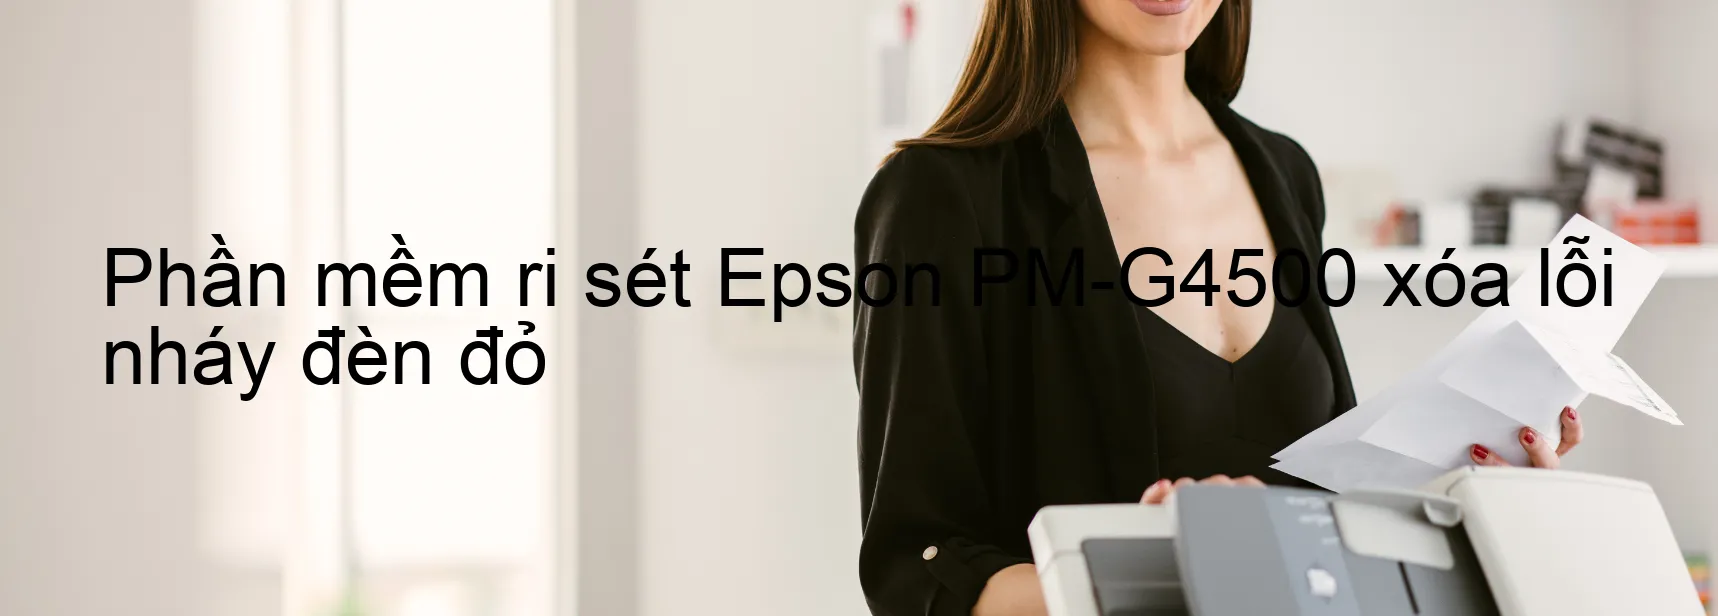 Phần mềm reset Epson PM-G4500 xóa lỗi nháy đèn đỏ